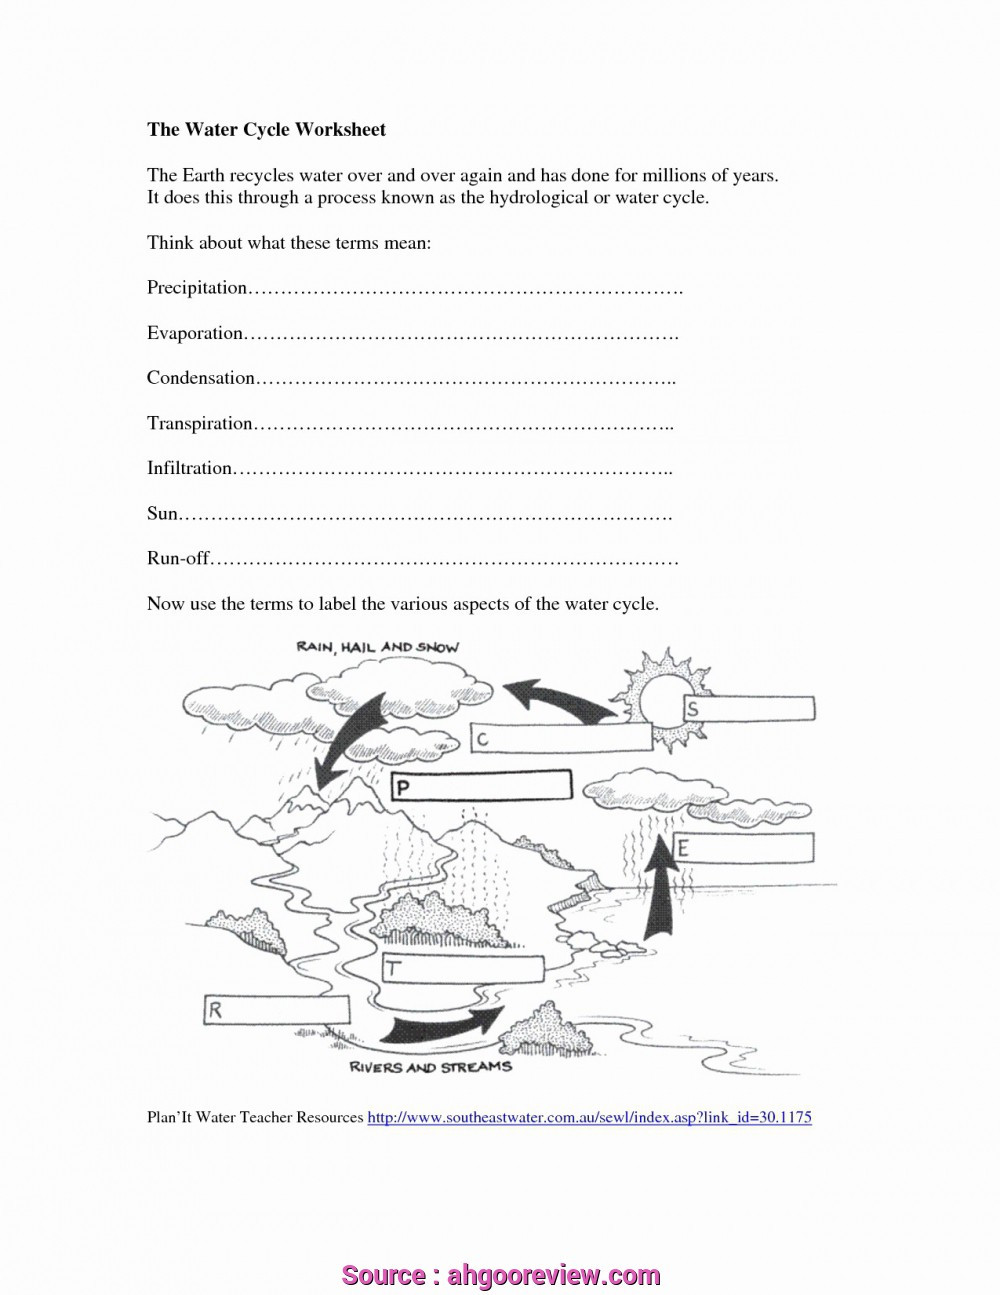 Water Cycle Worksheet Middle School 25 Water Cycle Worksheet Middle School Worksheet Resource